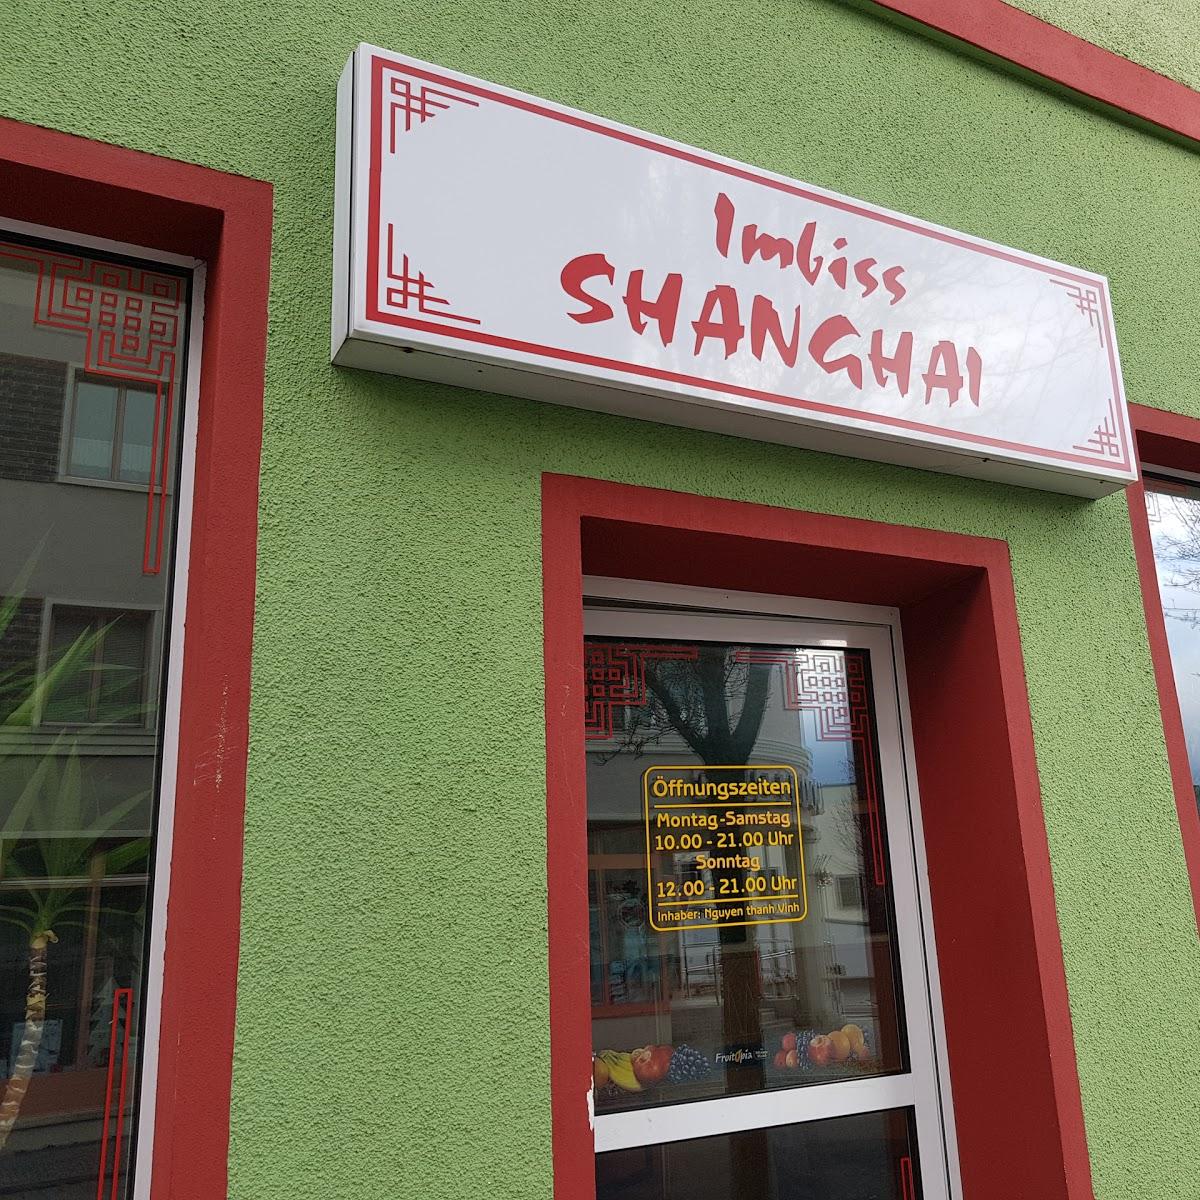 Restaurant "Imbiss Shanghai" in  Ilmenau